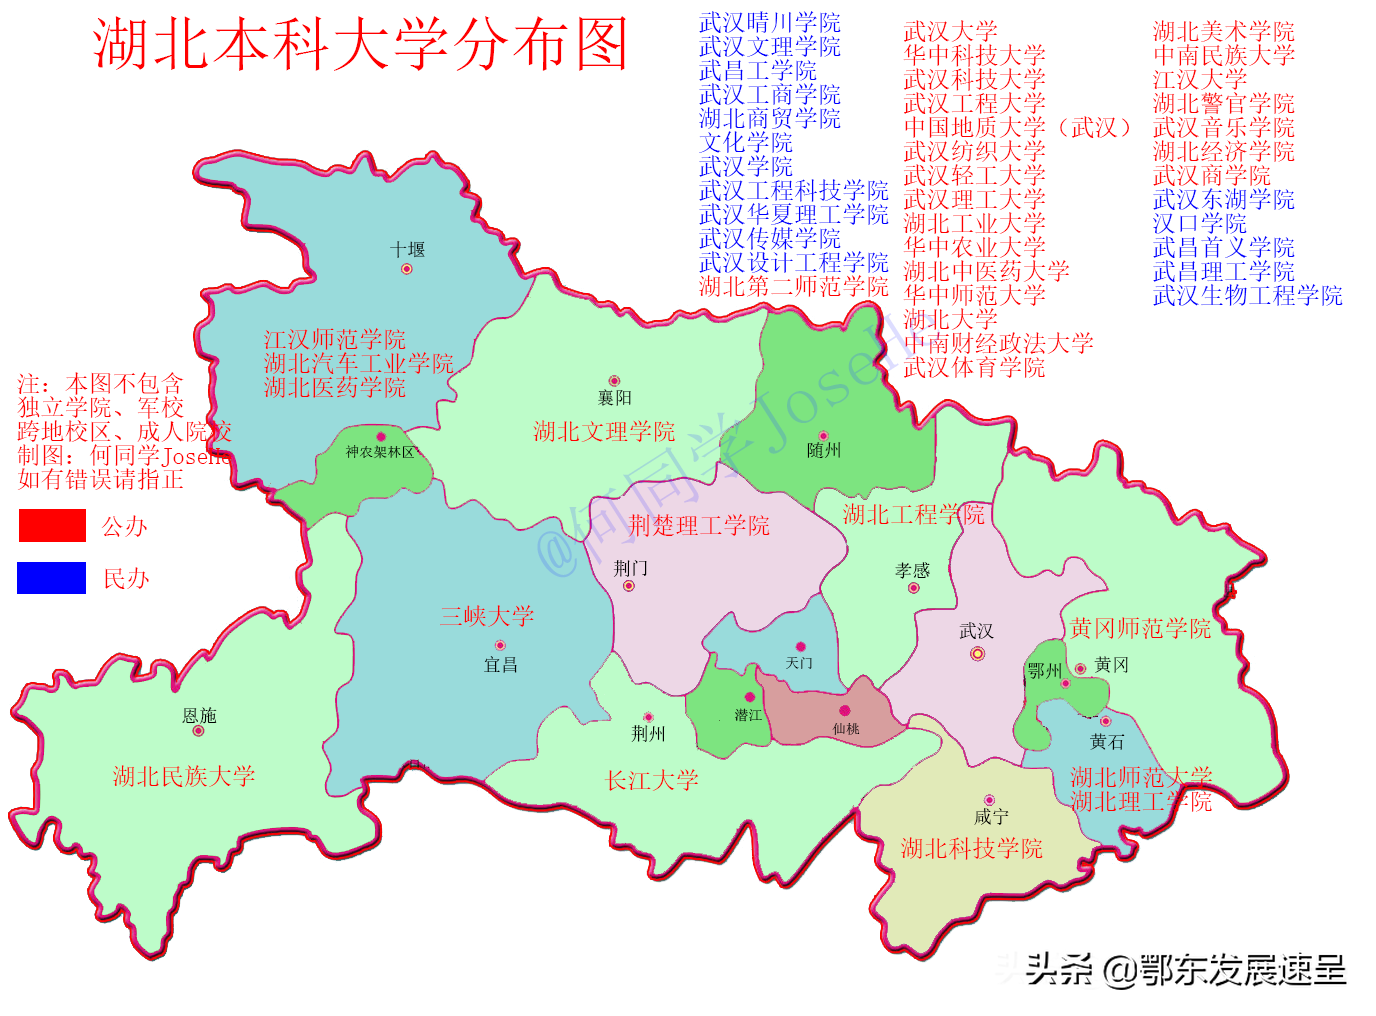 武汉城市圈高校资源将下沉到周边县市，近20所高校需外迁新建校区